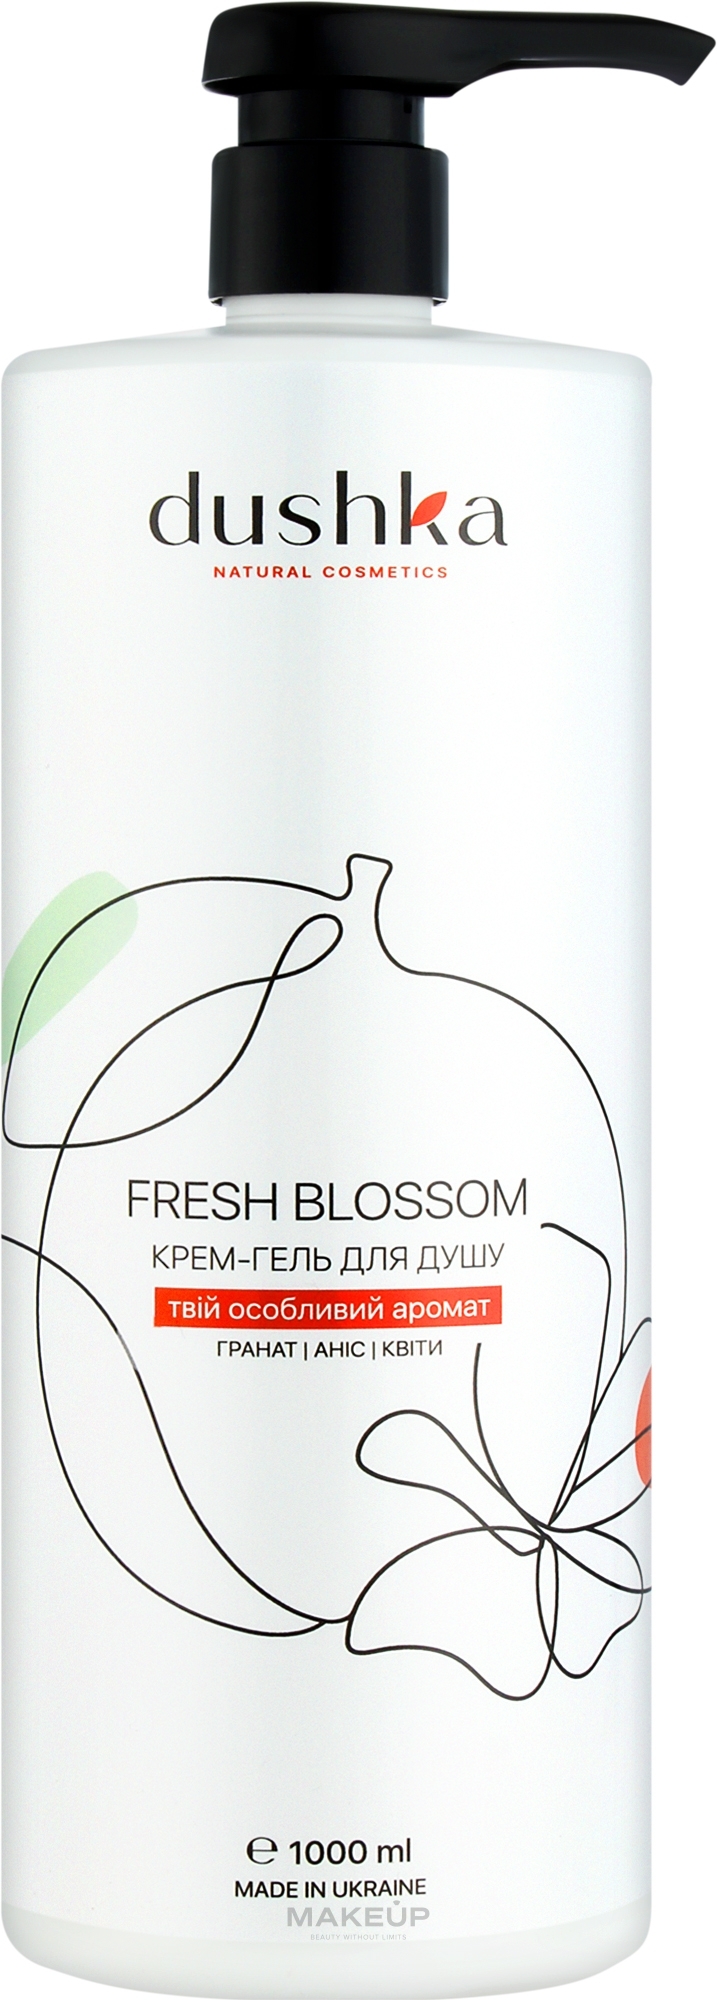 Крем-гель для душа - Dushka Fresh Blossom Shower Cream-Gel — фото 1000ml